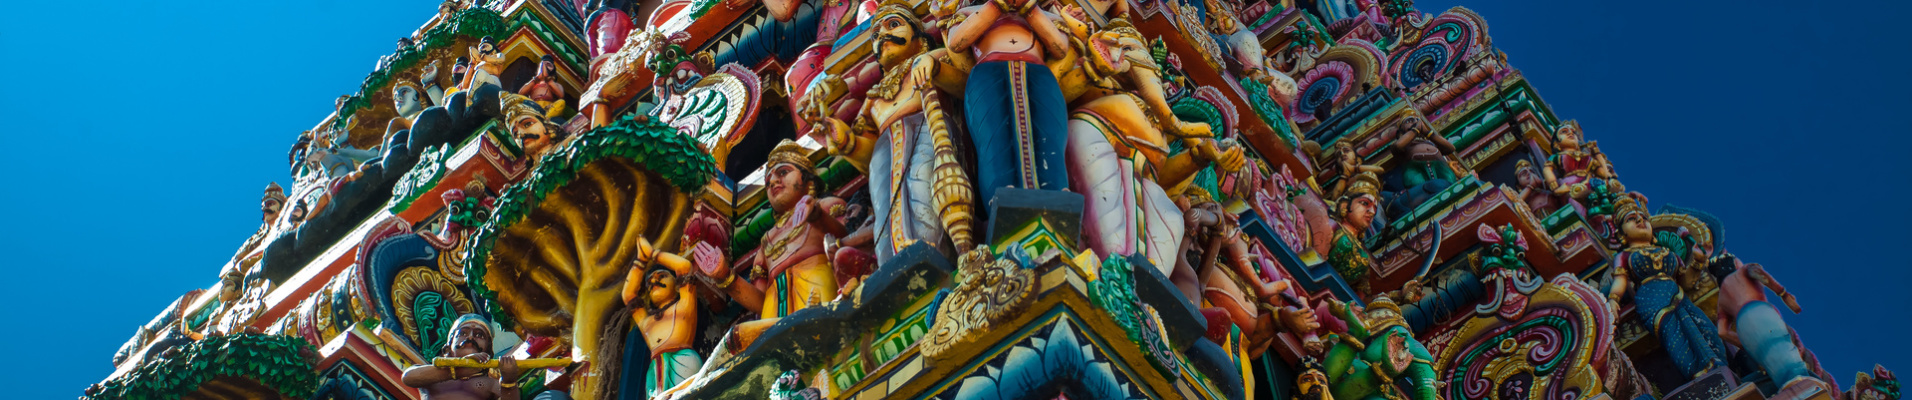 temple jaffna details